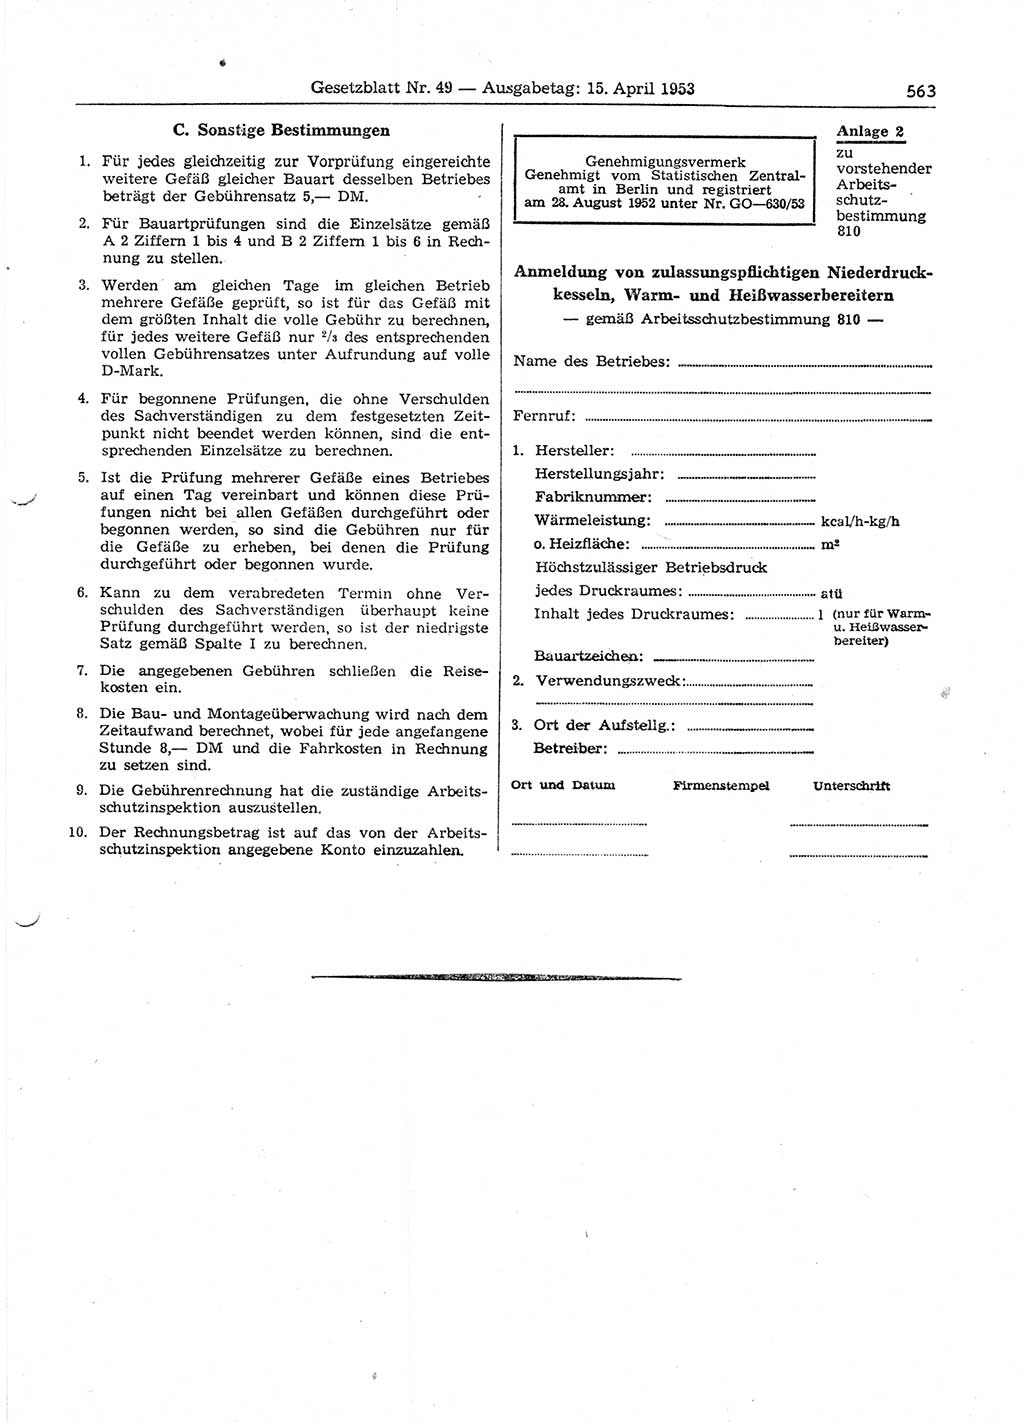 Gesetzblatt (GBl.) der Deutschen Demokratischen Republik (DDR) 1953, Seite 563 (GBl. DDR 1953, S. 563)